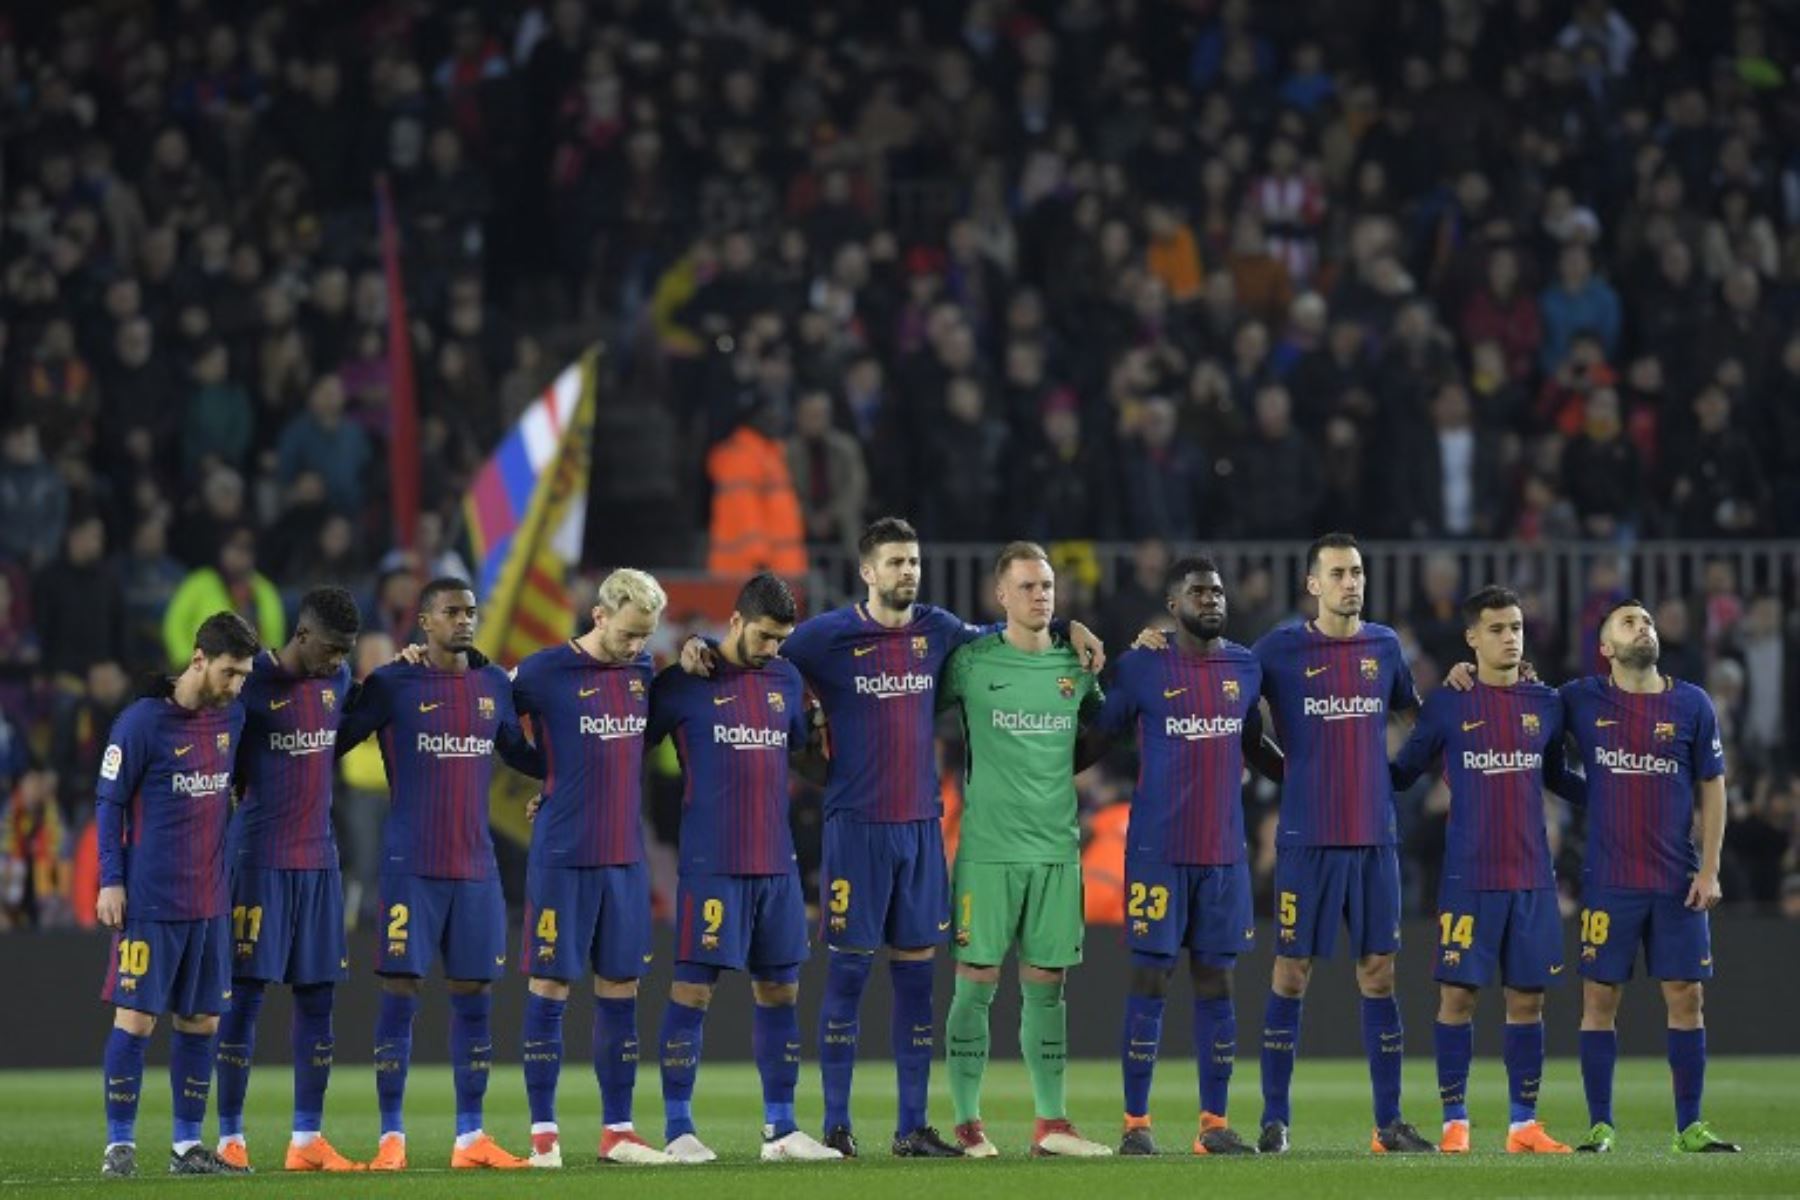 Los jugadores de Barcelona guardan un minuto de silencio en memoria del policía que murió antes de un partido de la Europa League en España.Foto:AFP